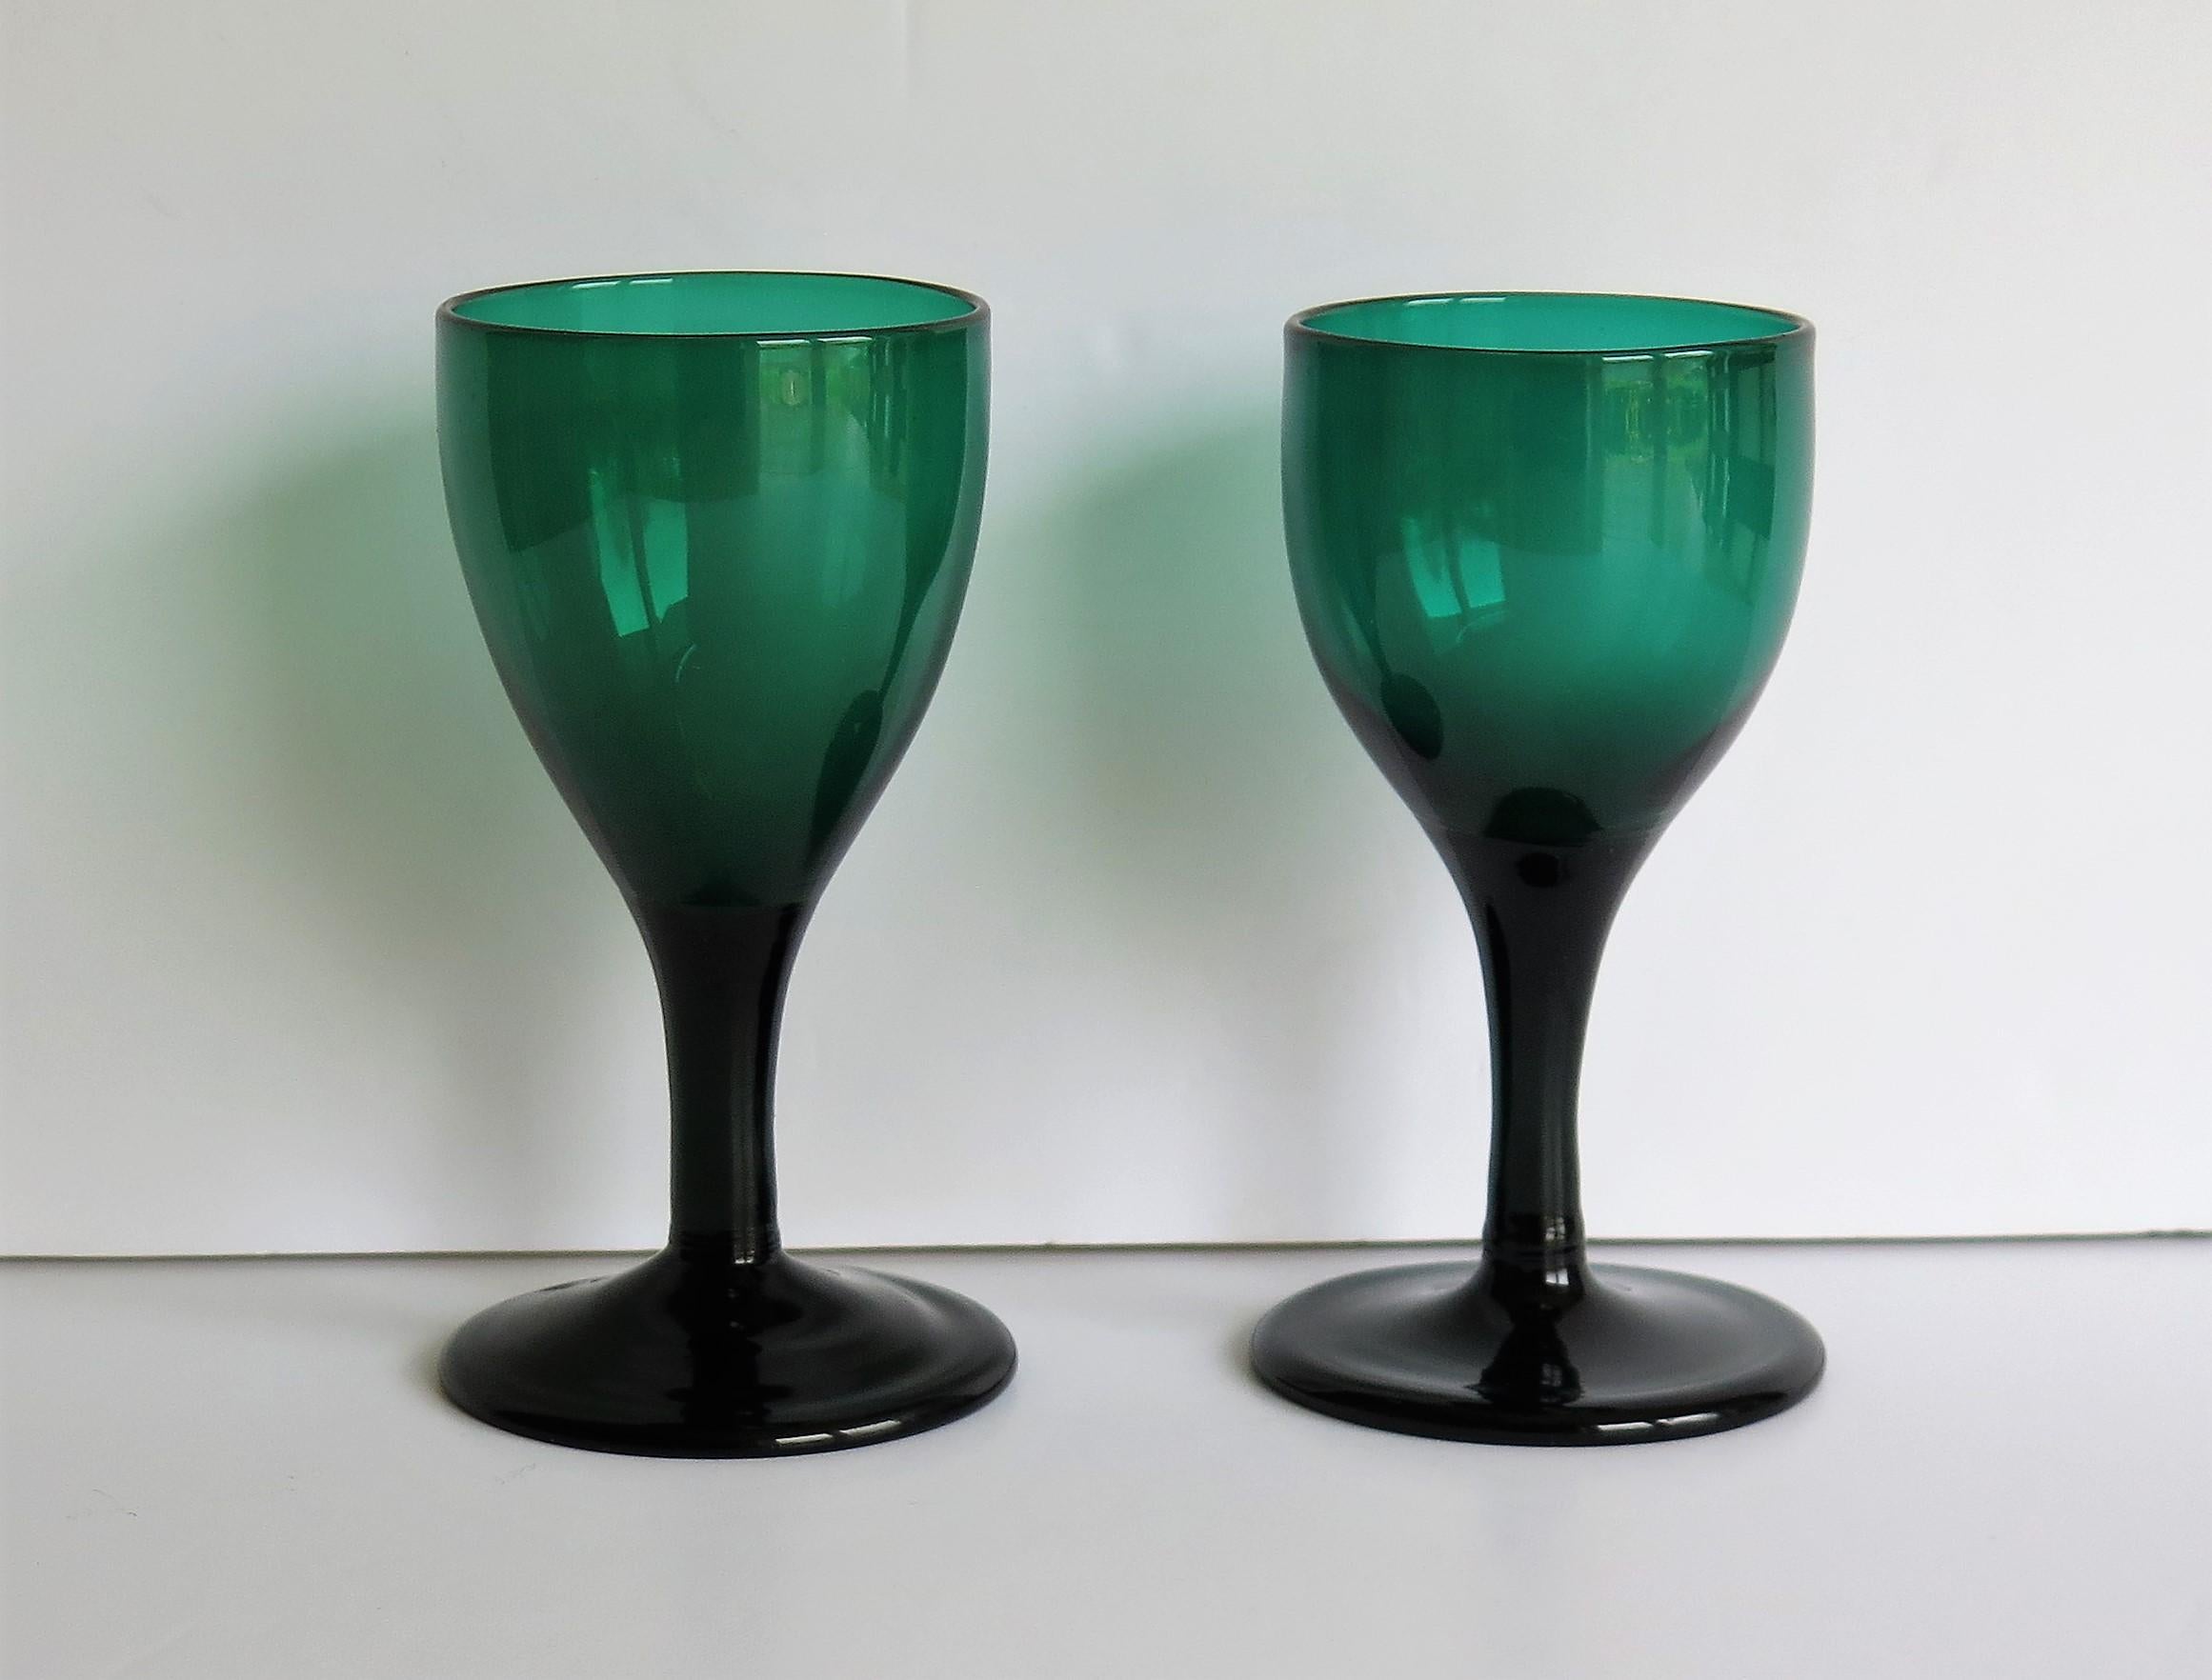 Es handelt sich um zwei (sehr nahe beieinander liegende) gute englische Weingläser, mundgeblasen, Bristol Green, Bleiglas, aus dem späten 18. Jahrhundert, George 111rd Periode, ca. 1790.

Jedes Glas hat eine gezogene tulpenförmige Schale, die sich